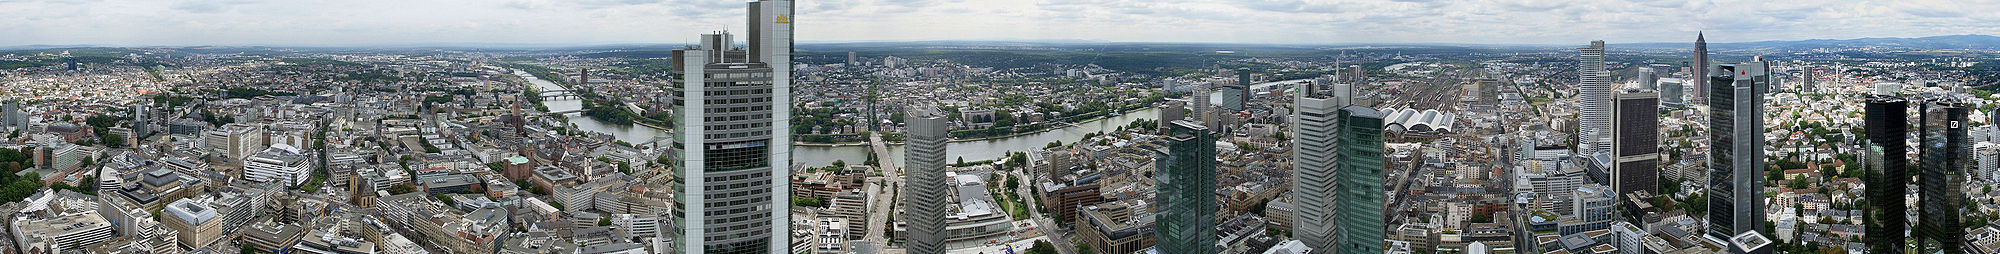 Panoramaansicht vom Maintower. Die Blickrichtungen sind Osten (links), Süden (Bildmitte) und Westen (rechts).